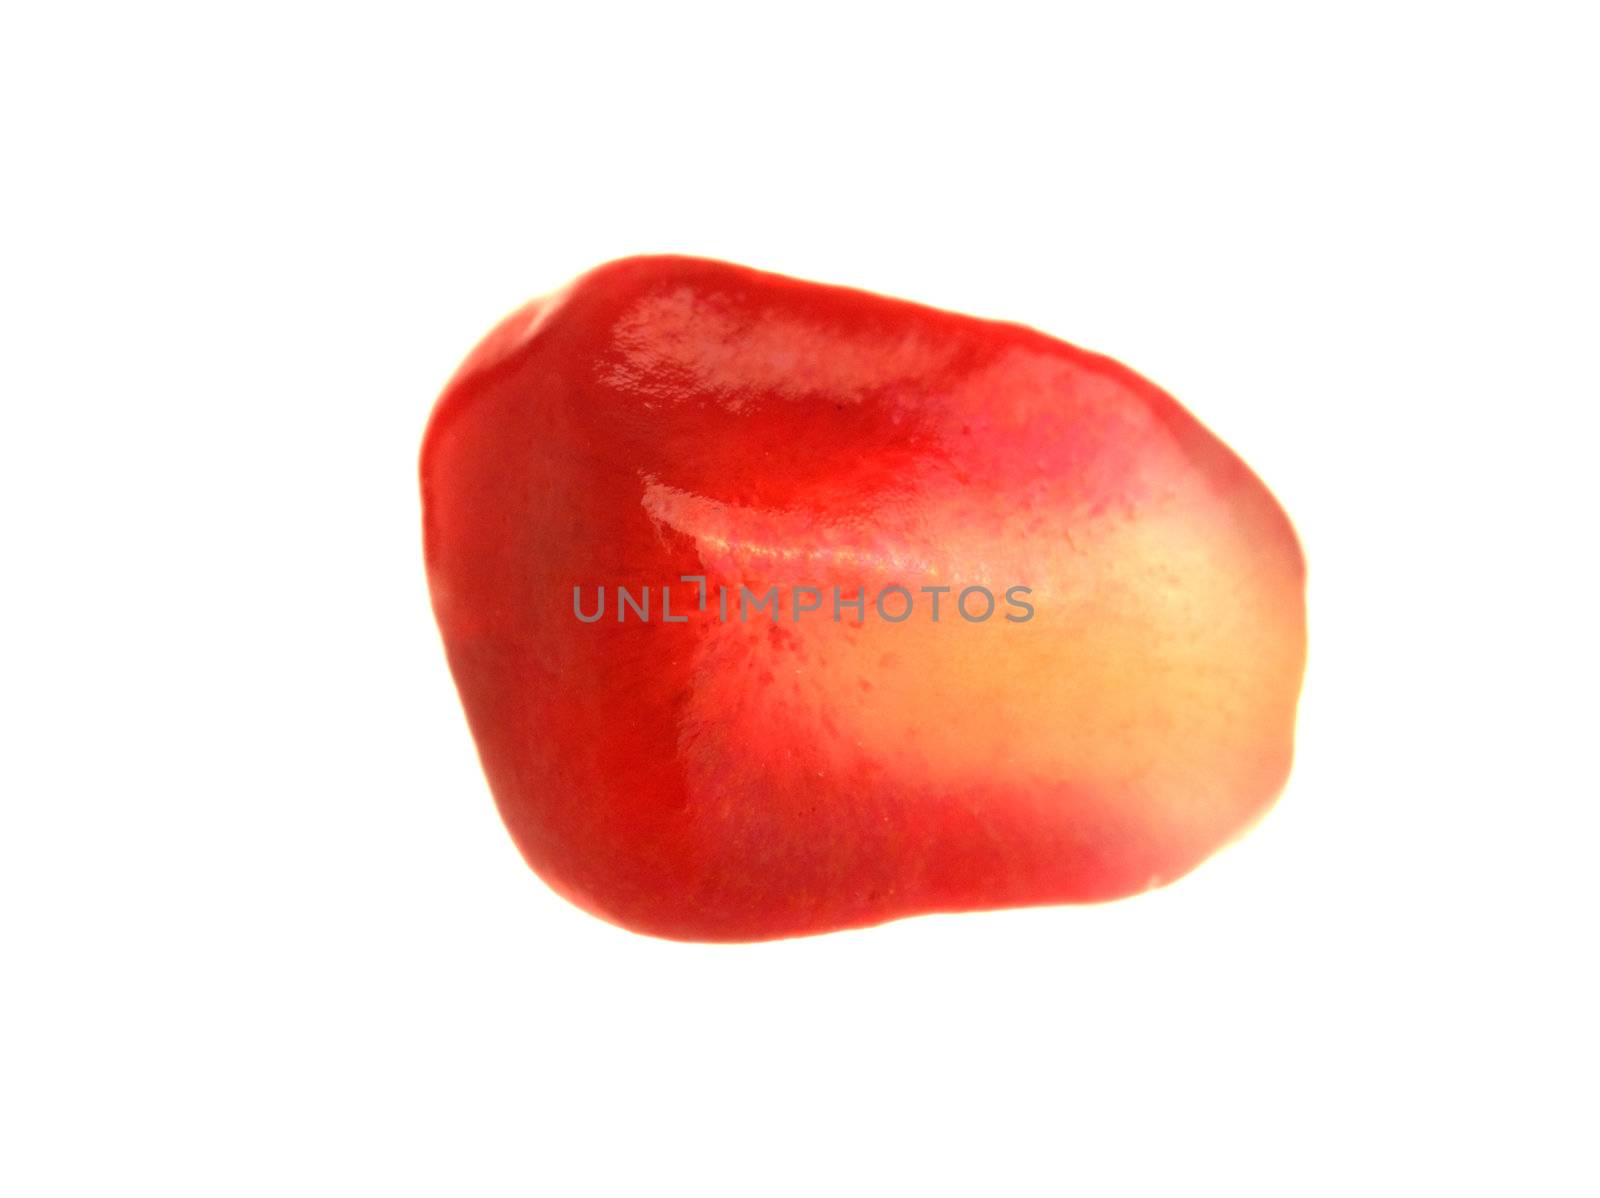 Pomegranate by motorolka